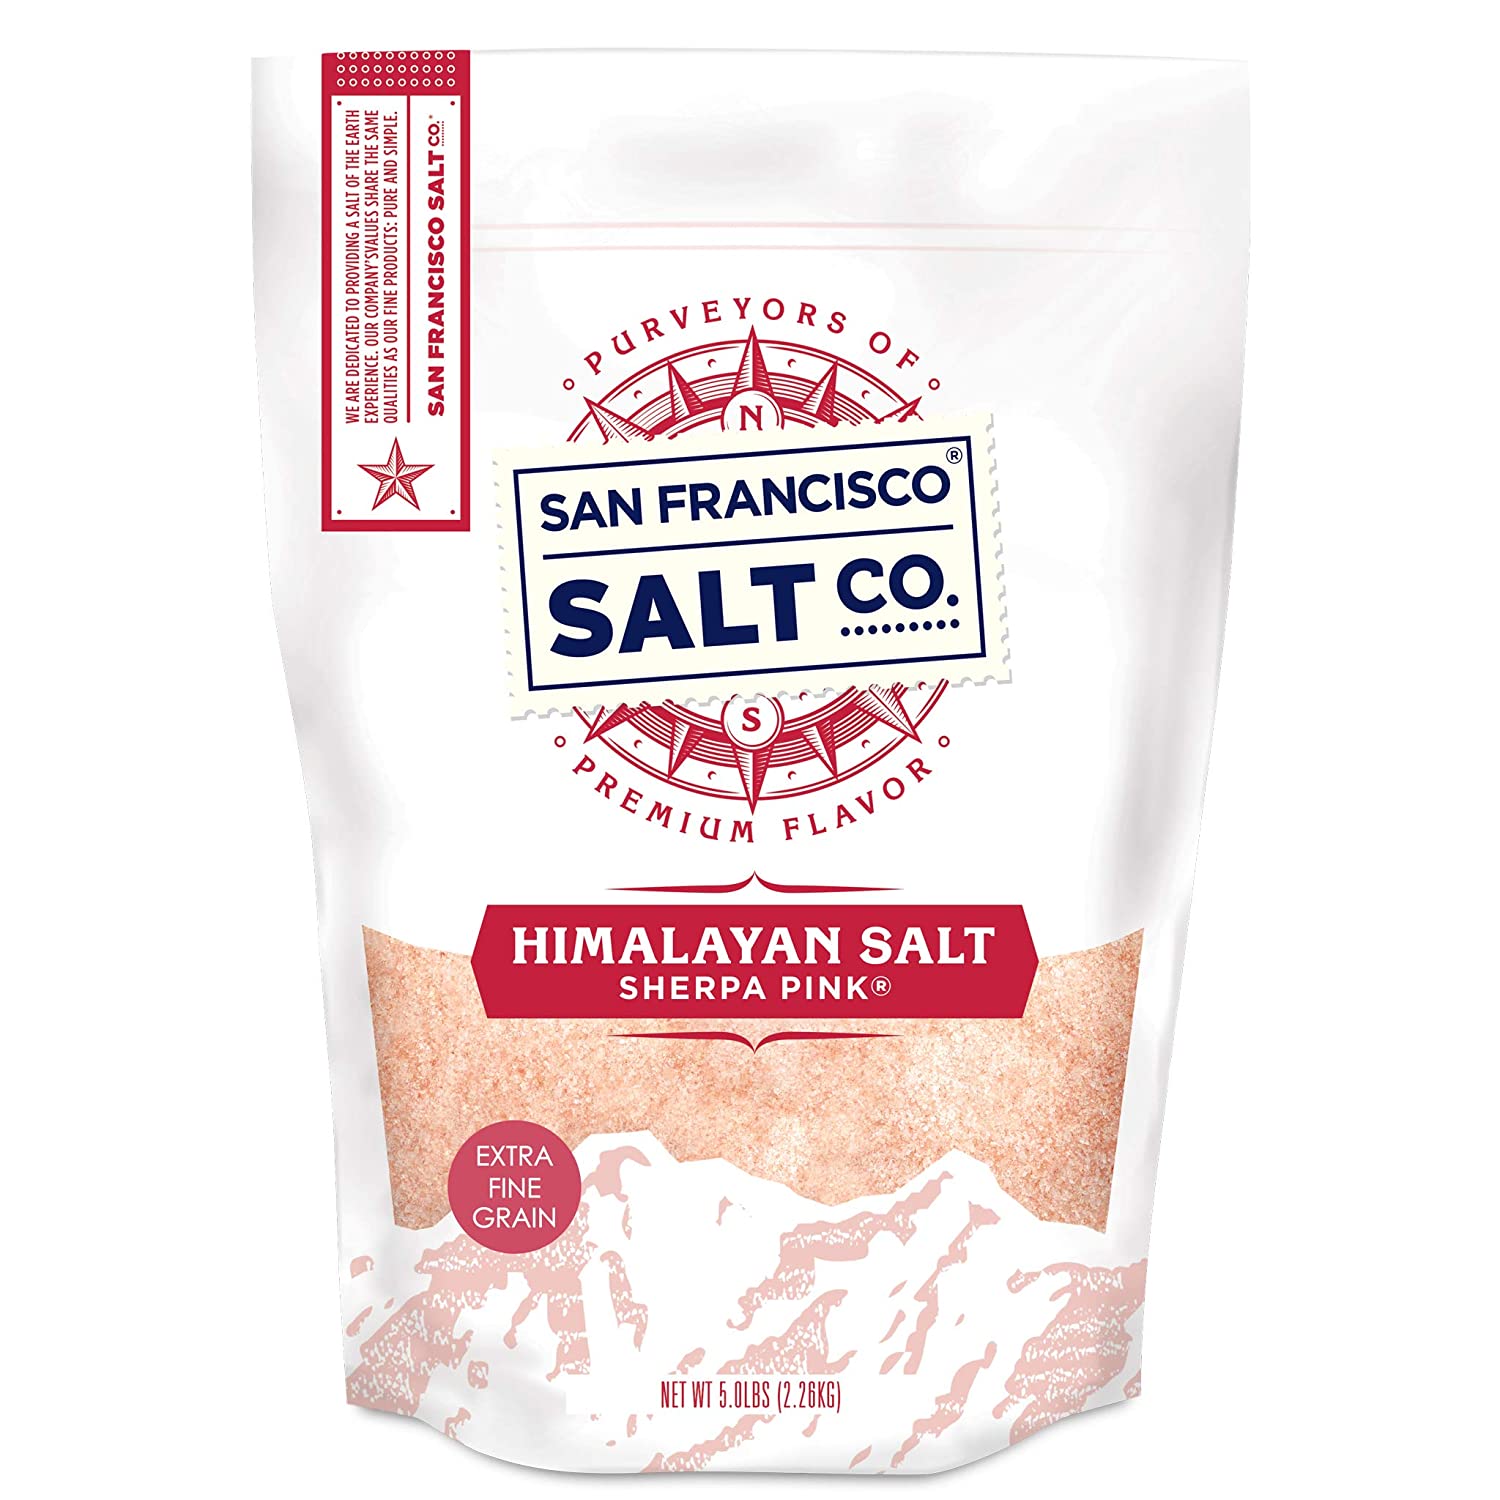 Sherpa Pink Himalayan Salt